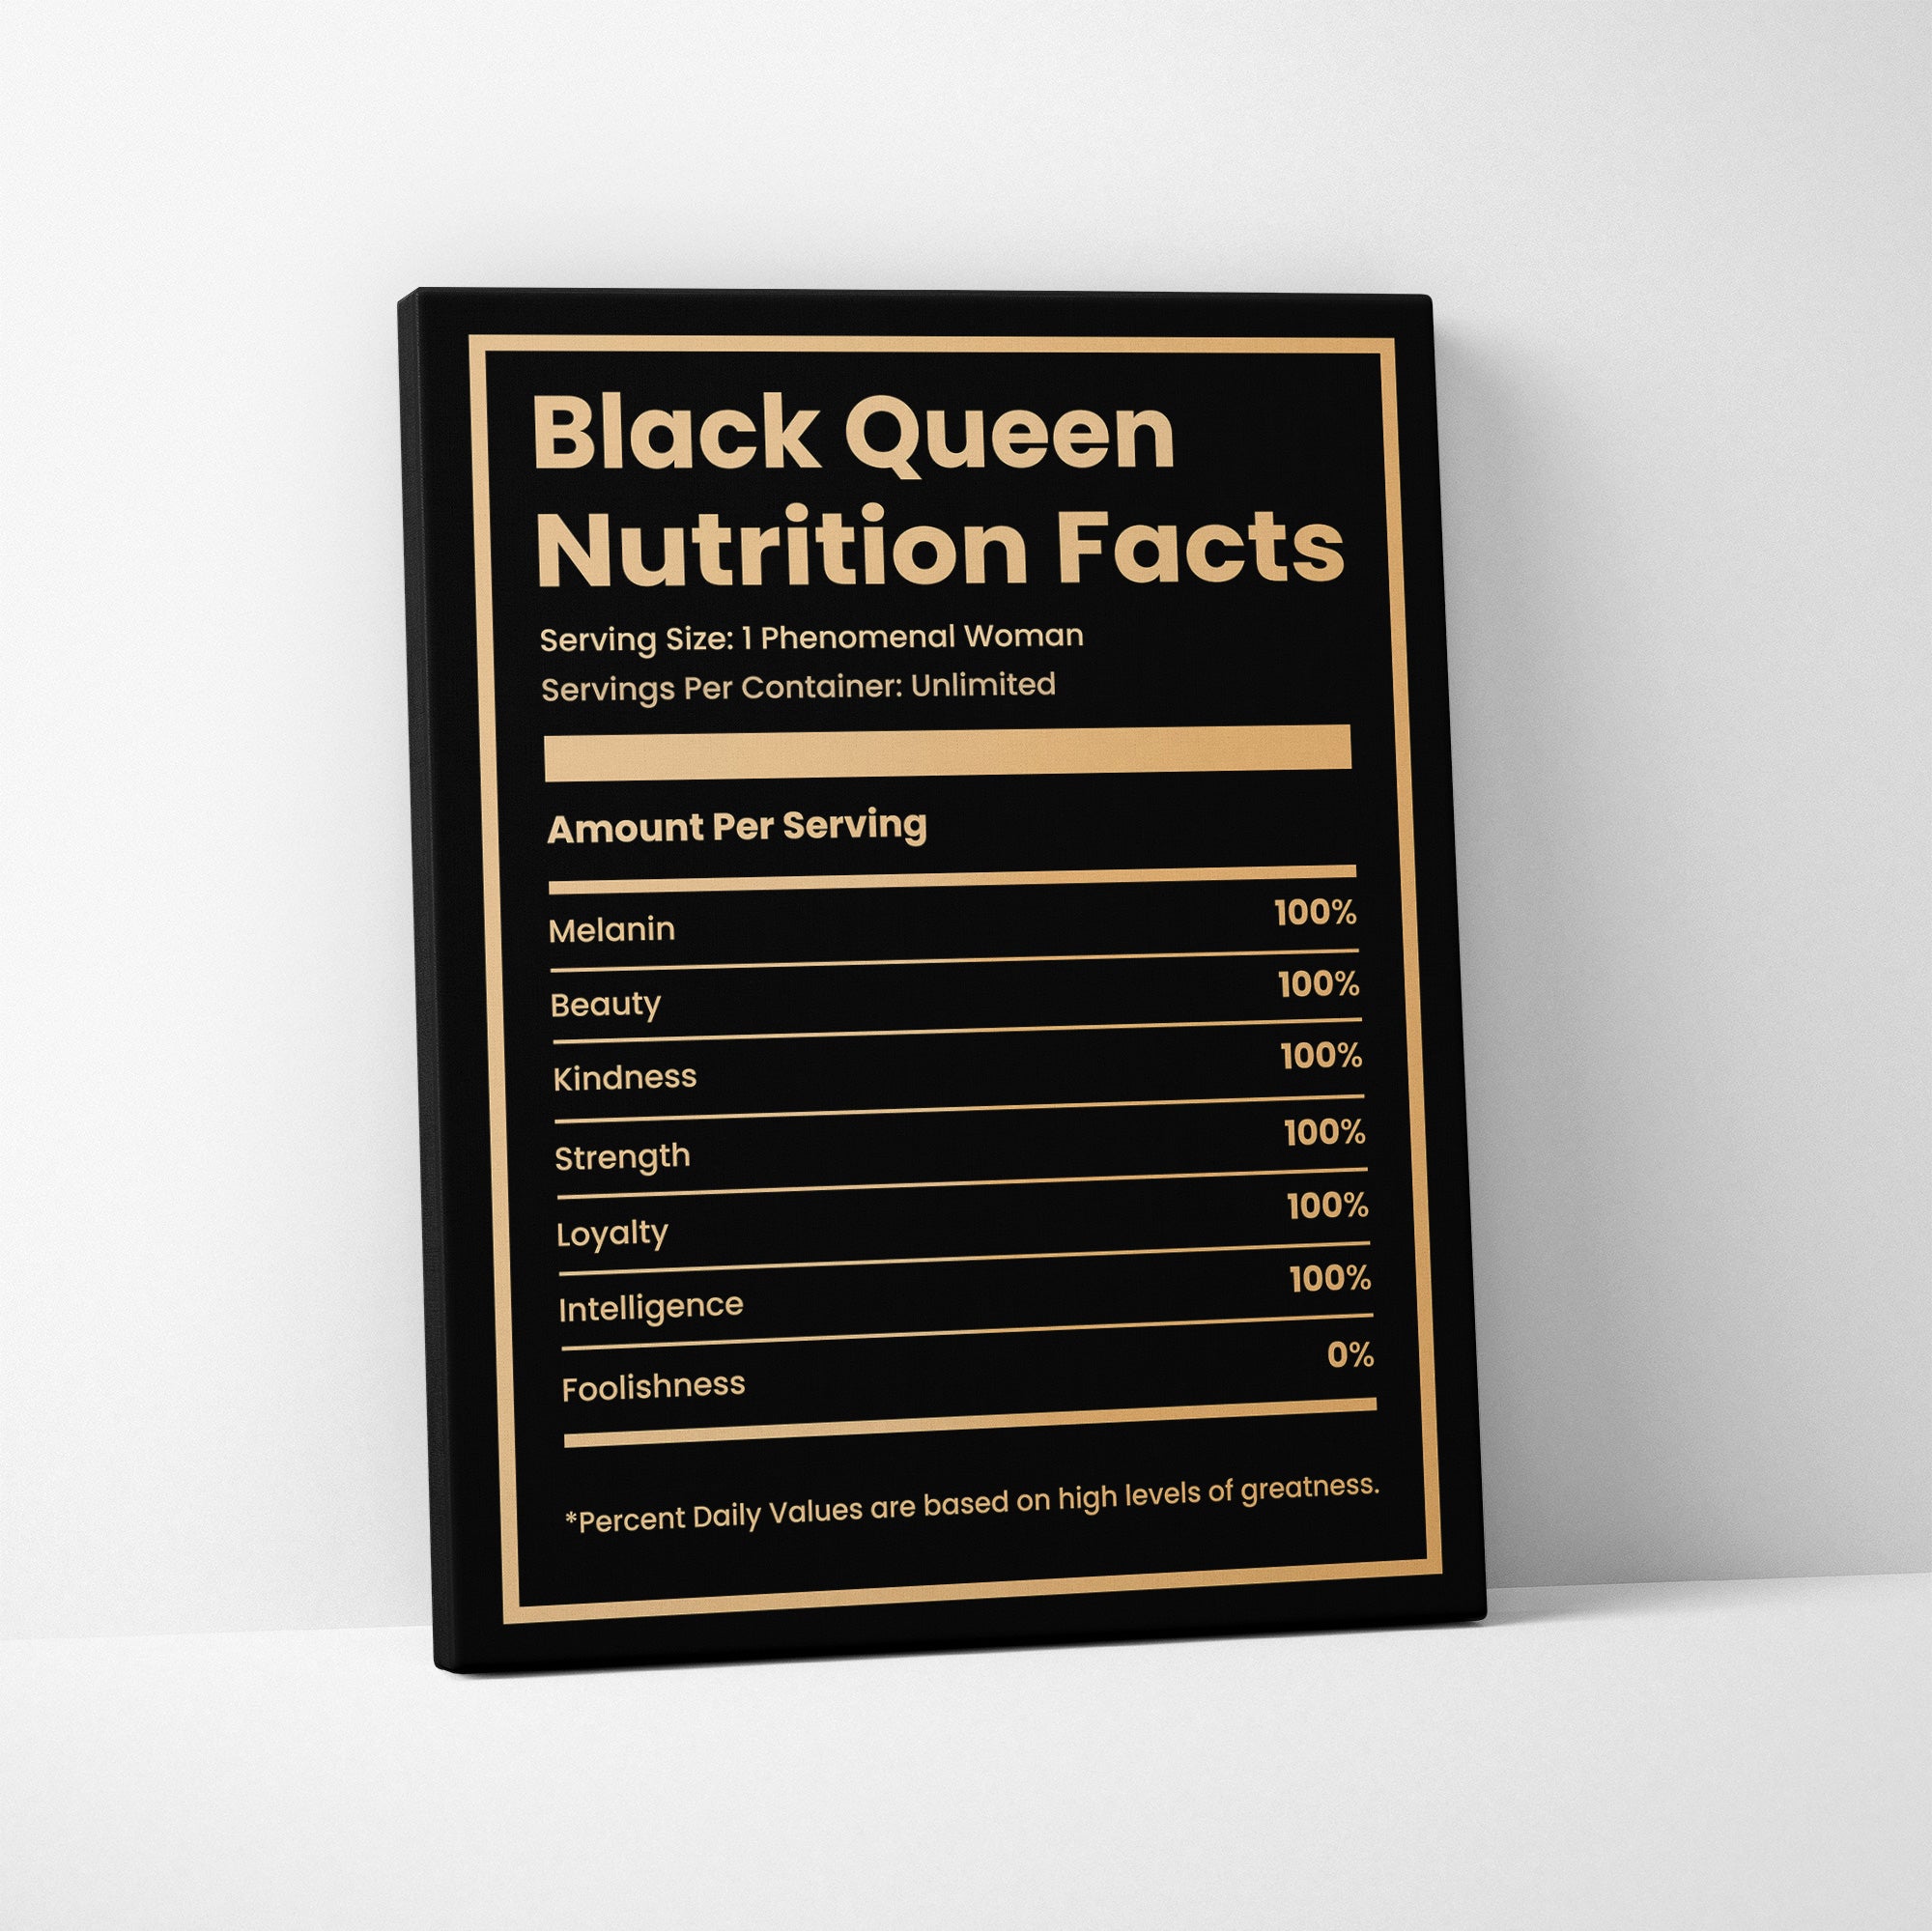 Black Queen Ingredients